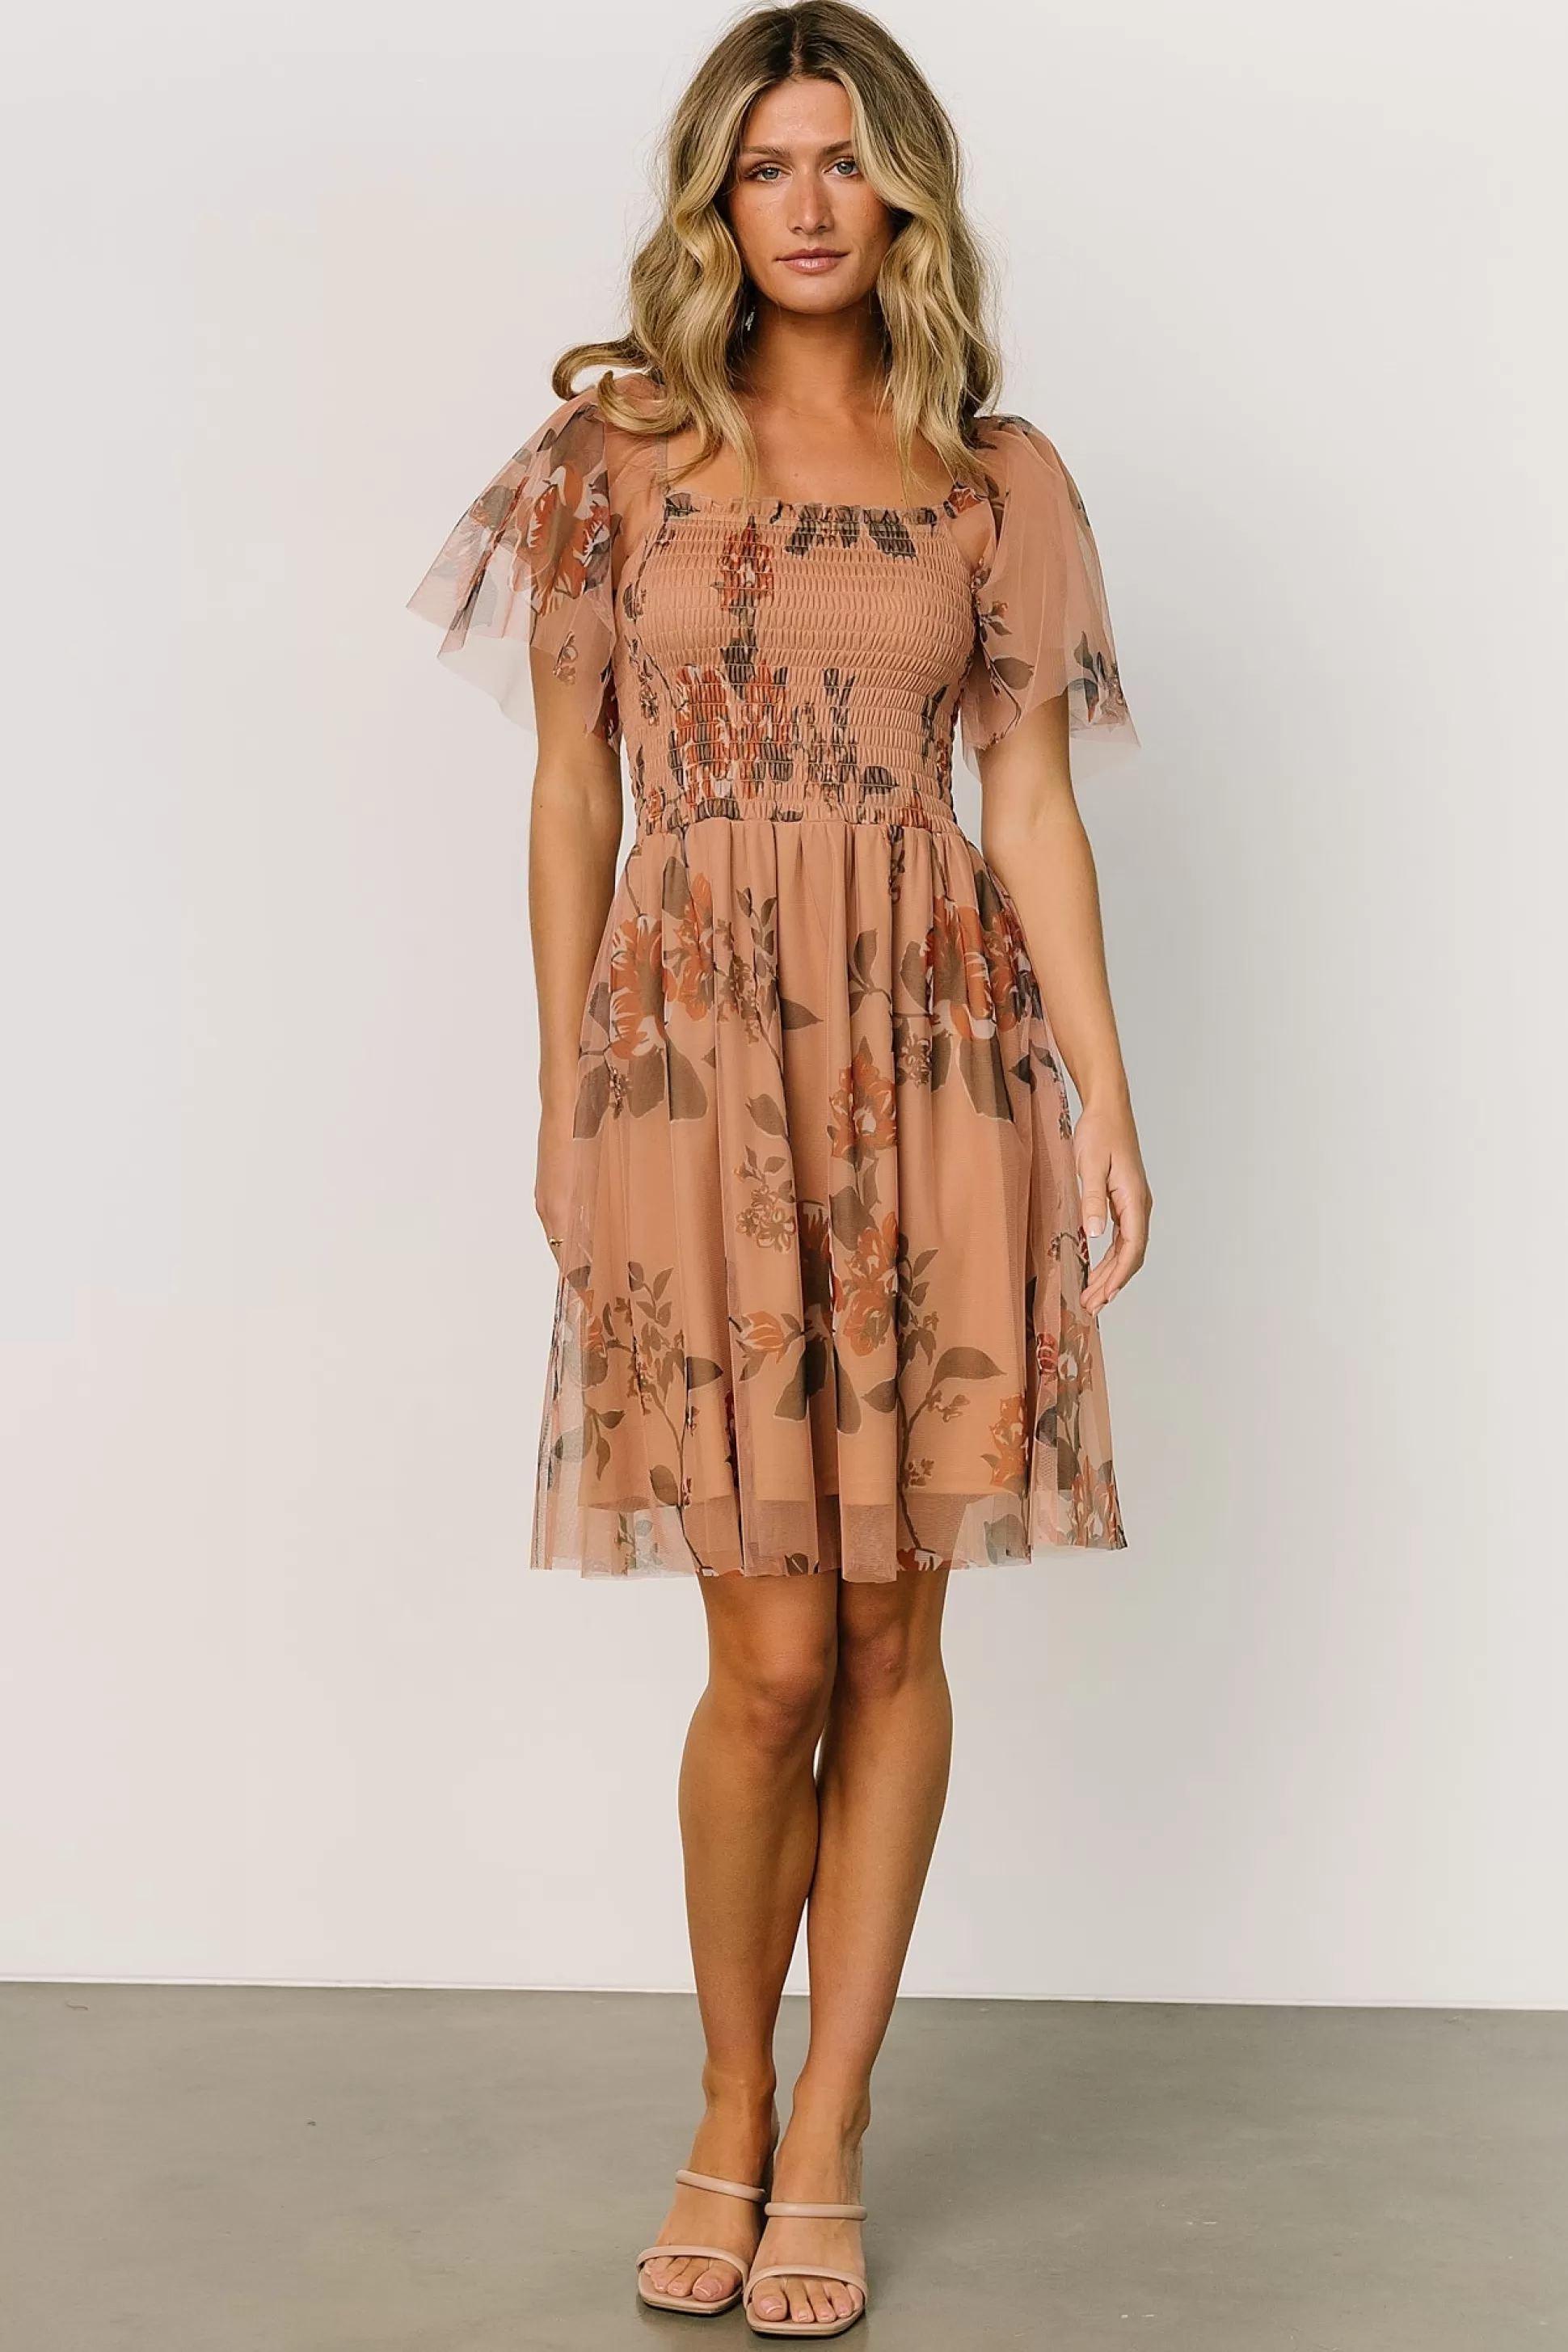 DRESSES | short dresses | Baltic Born Tivoli Tulle Short Dress | Copper Floral